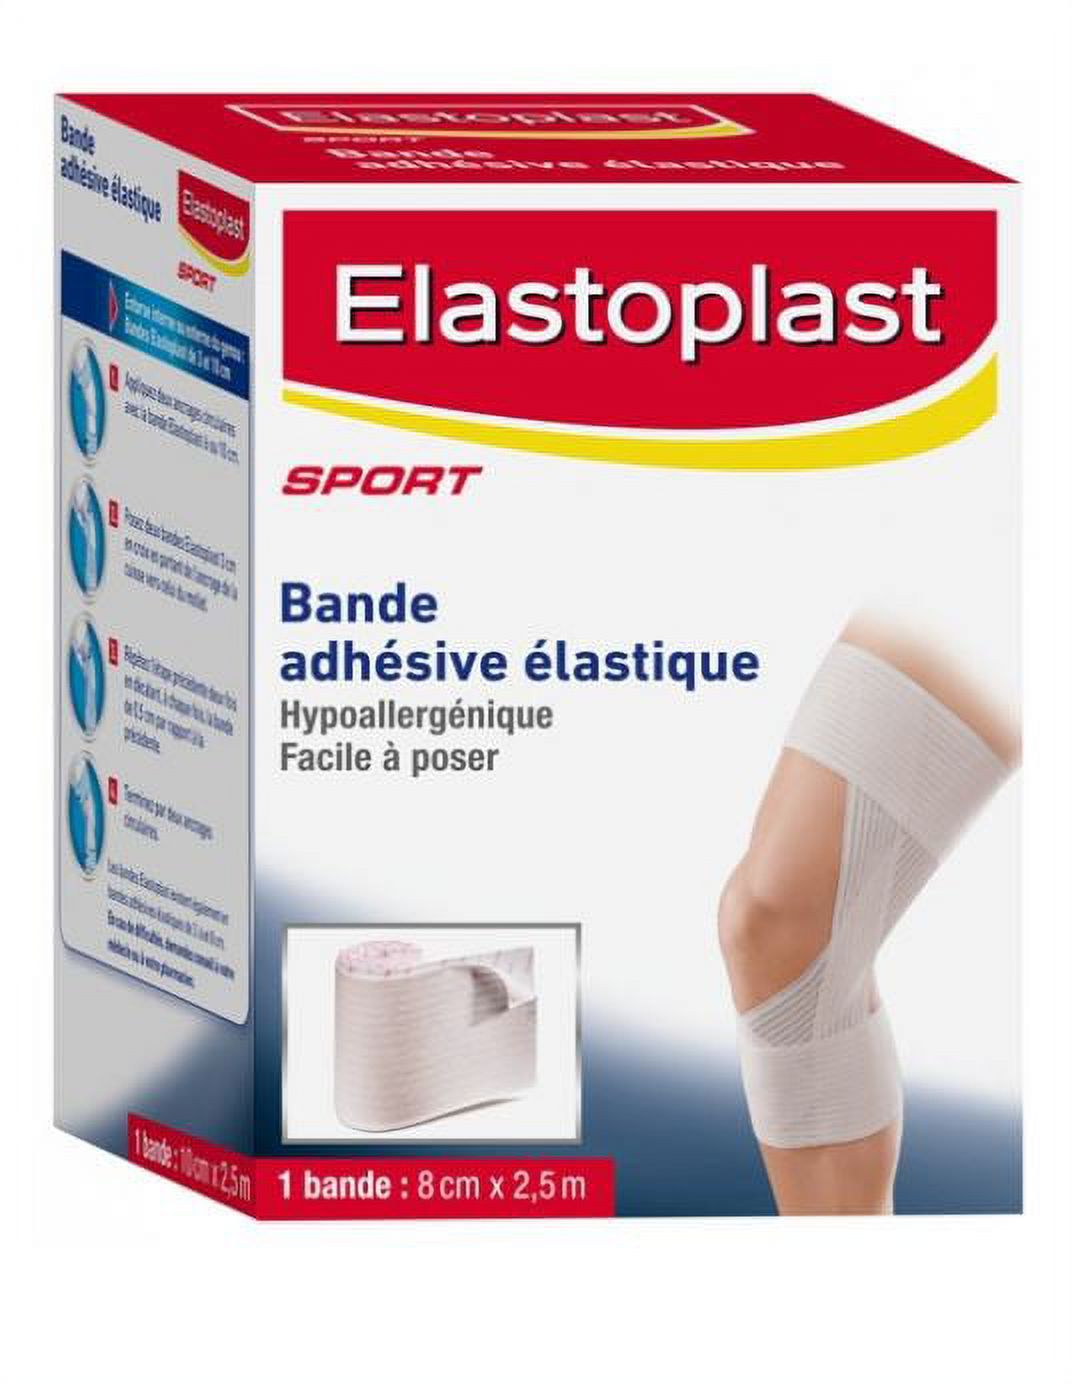 Elastoplast Adhesive Stretching Bandage 8cmx2.5m - image 1 of 1